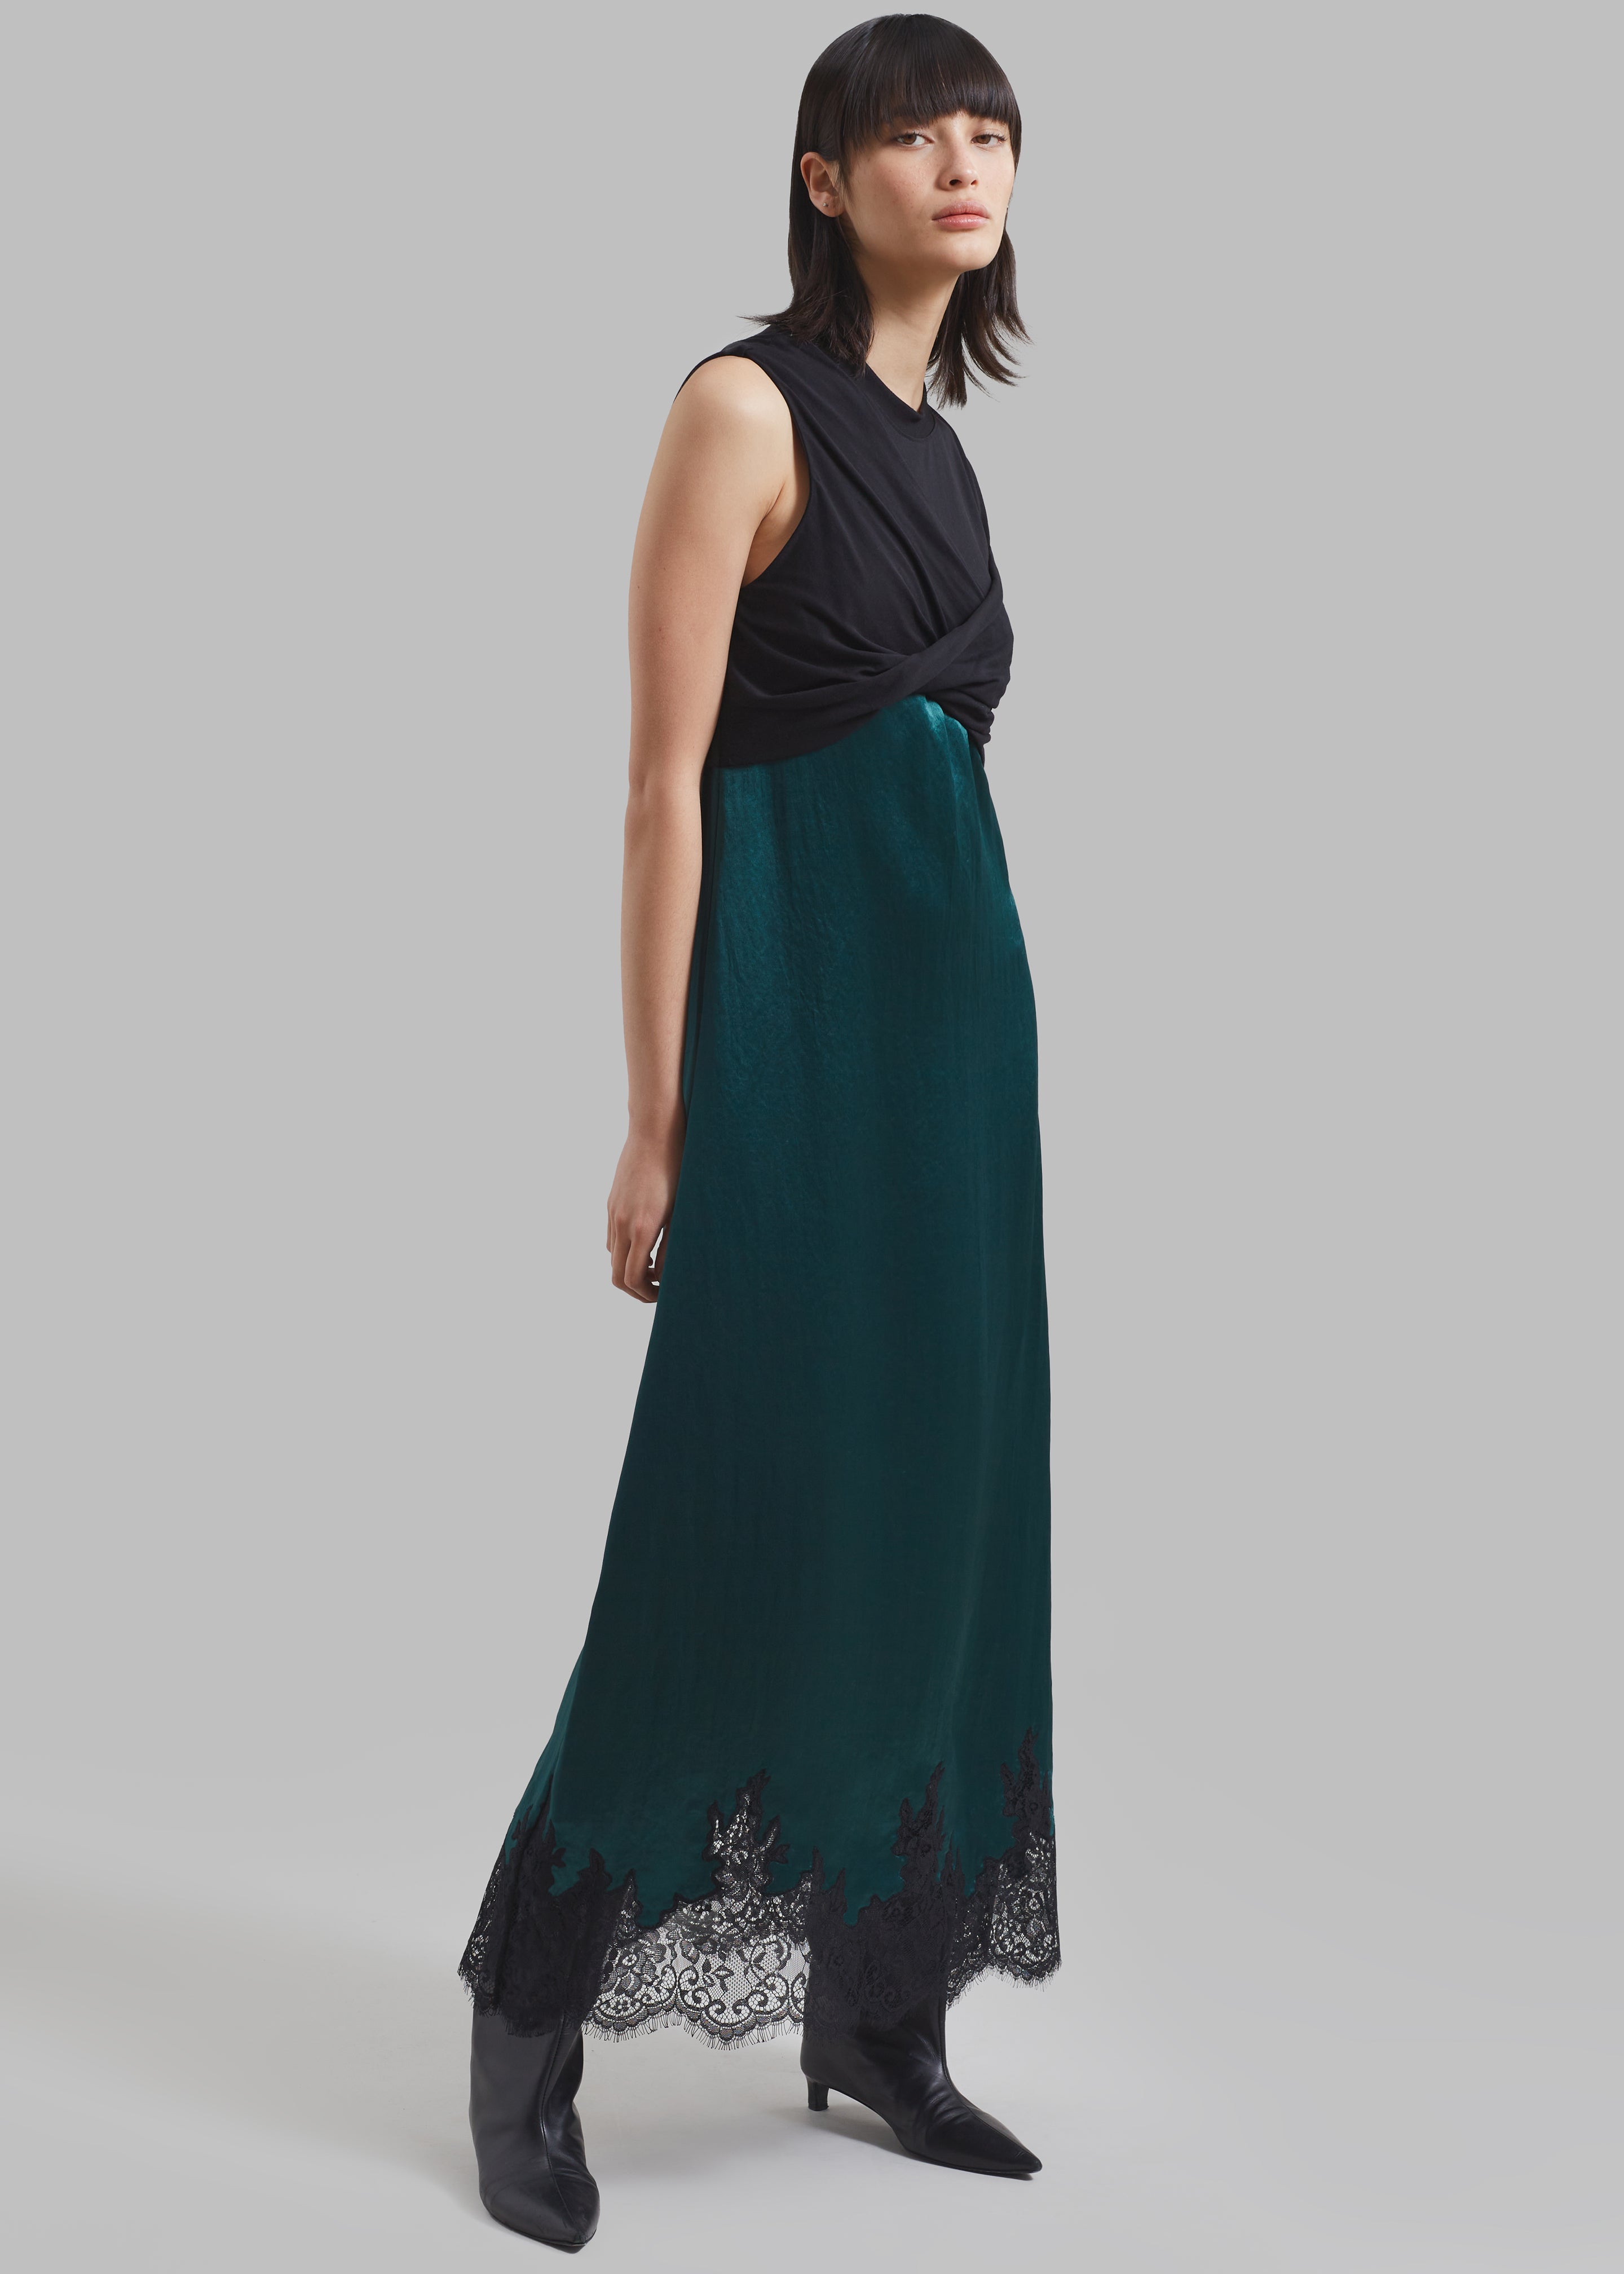 3.1 Phillip Lim Twist Tank Slip Dress - Black/Emerald